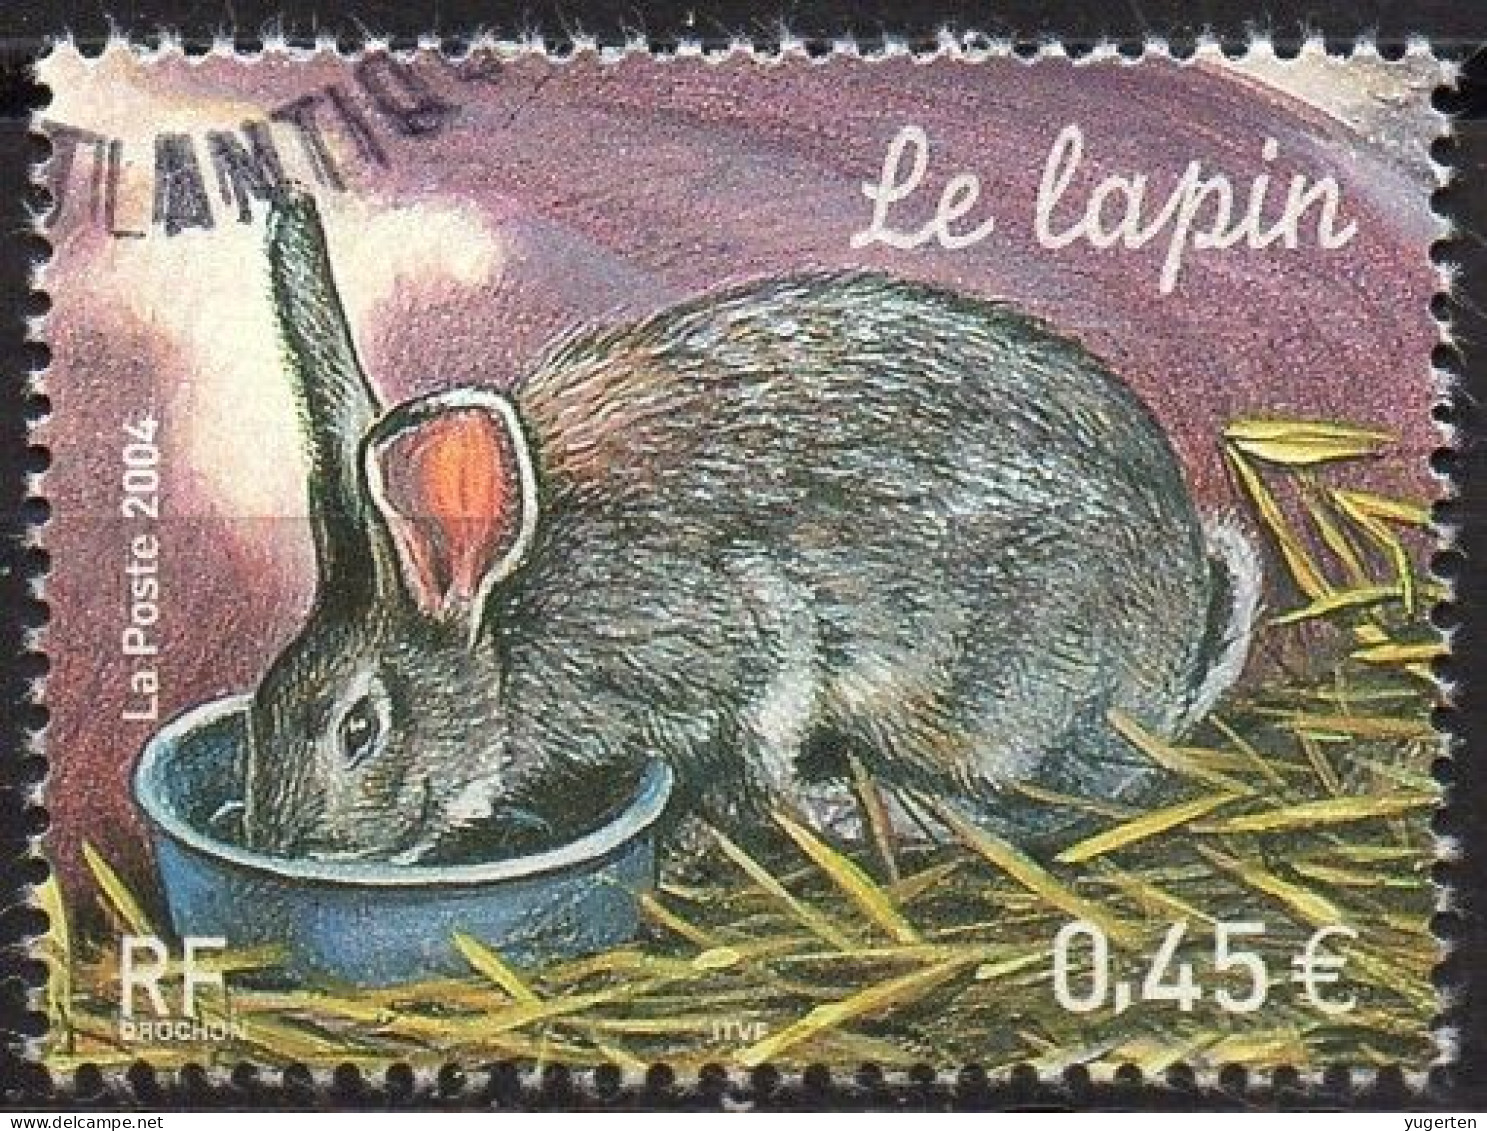 FRANCE 2004 - 1v - Used - Oblitéré - Lapin - Rabbit - Kaninchen - Conejo - Coniglio - Rabbits - Lapins - Conigli - - Conigli